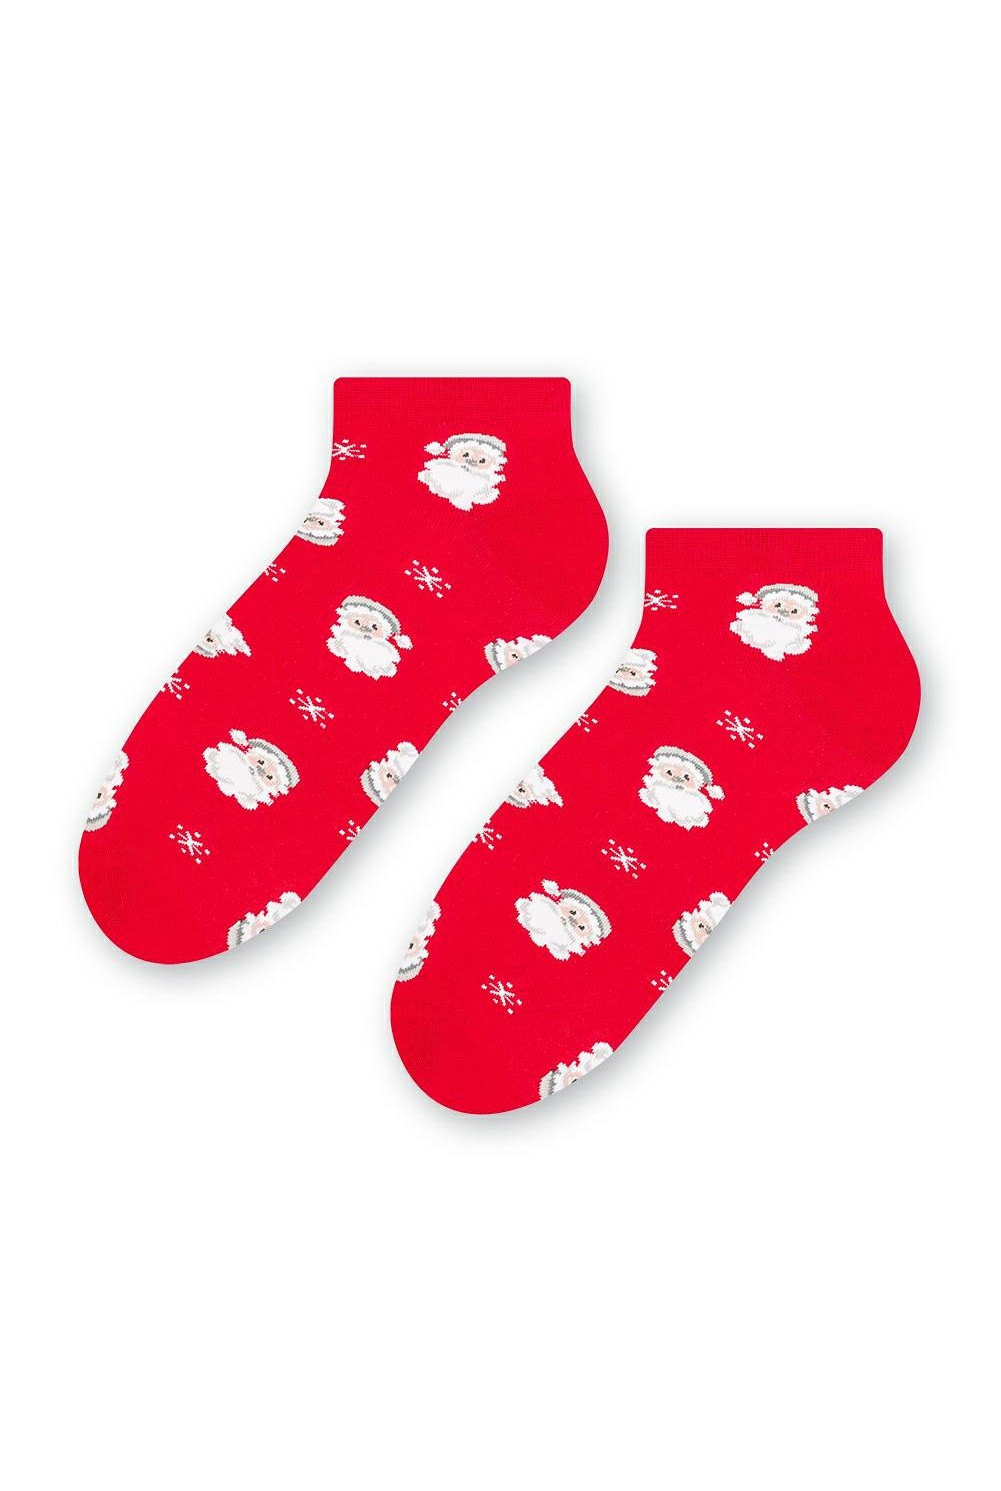 Dámské vánoční ponožky Steven art.136 35-40 černá 38-40